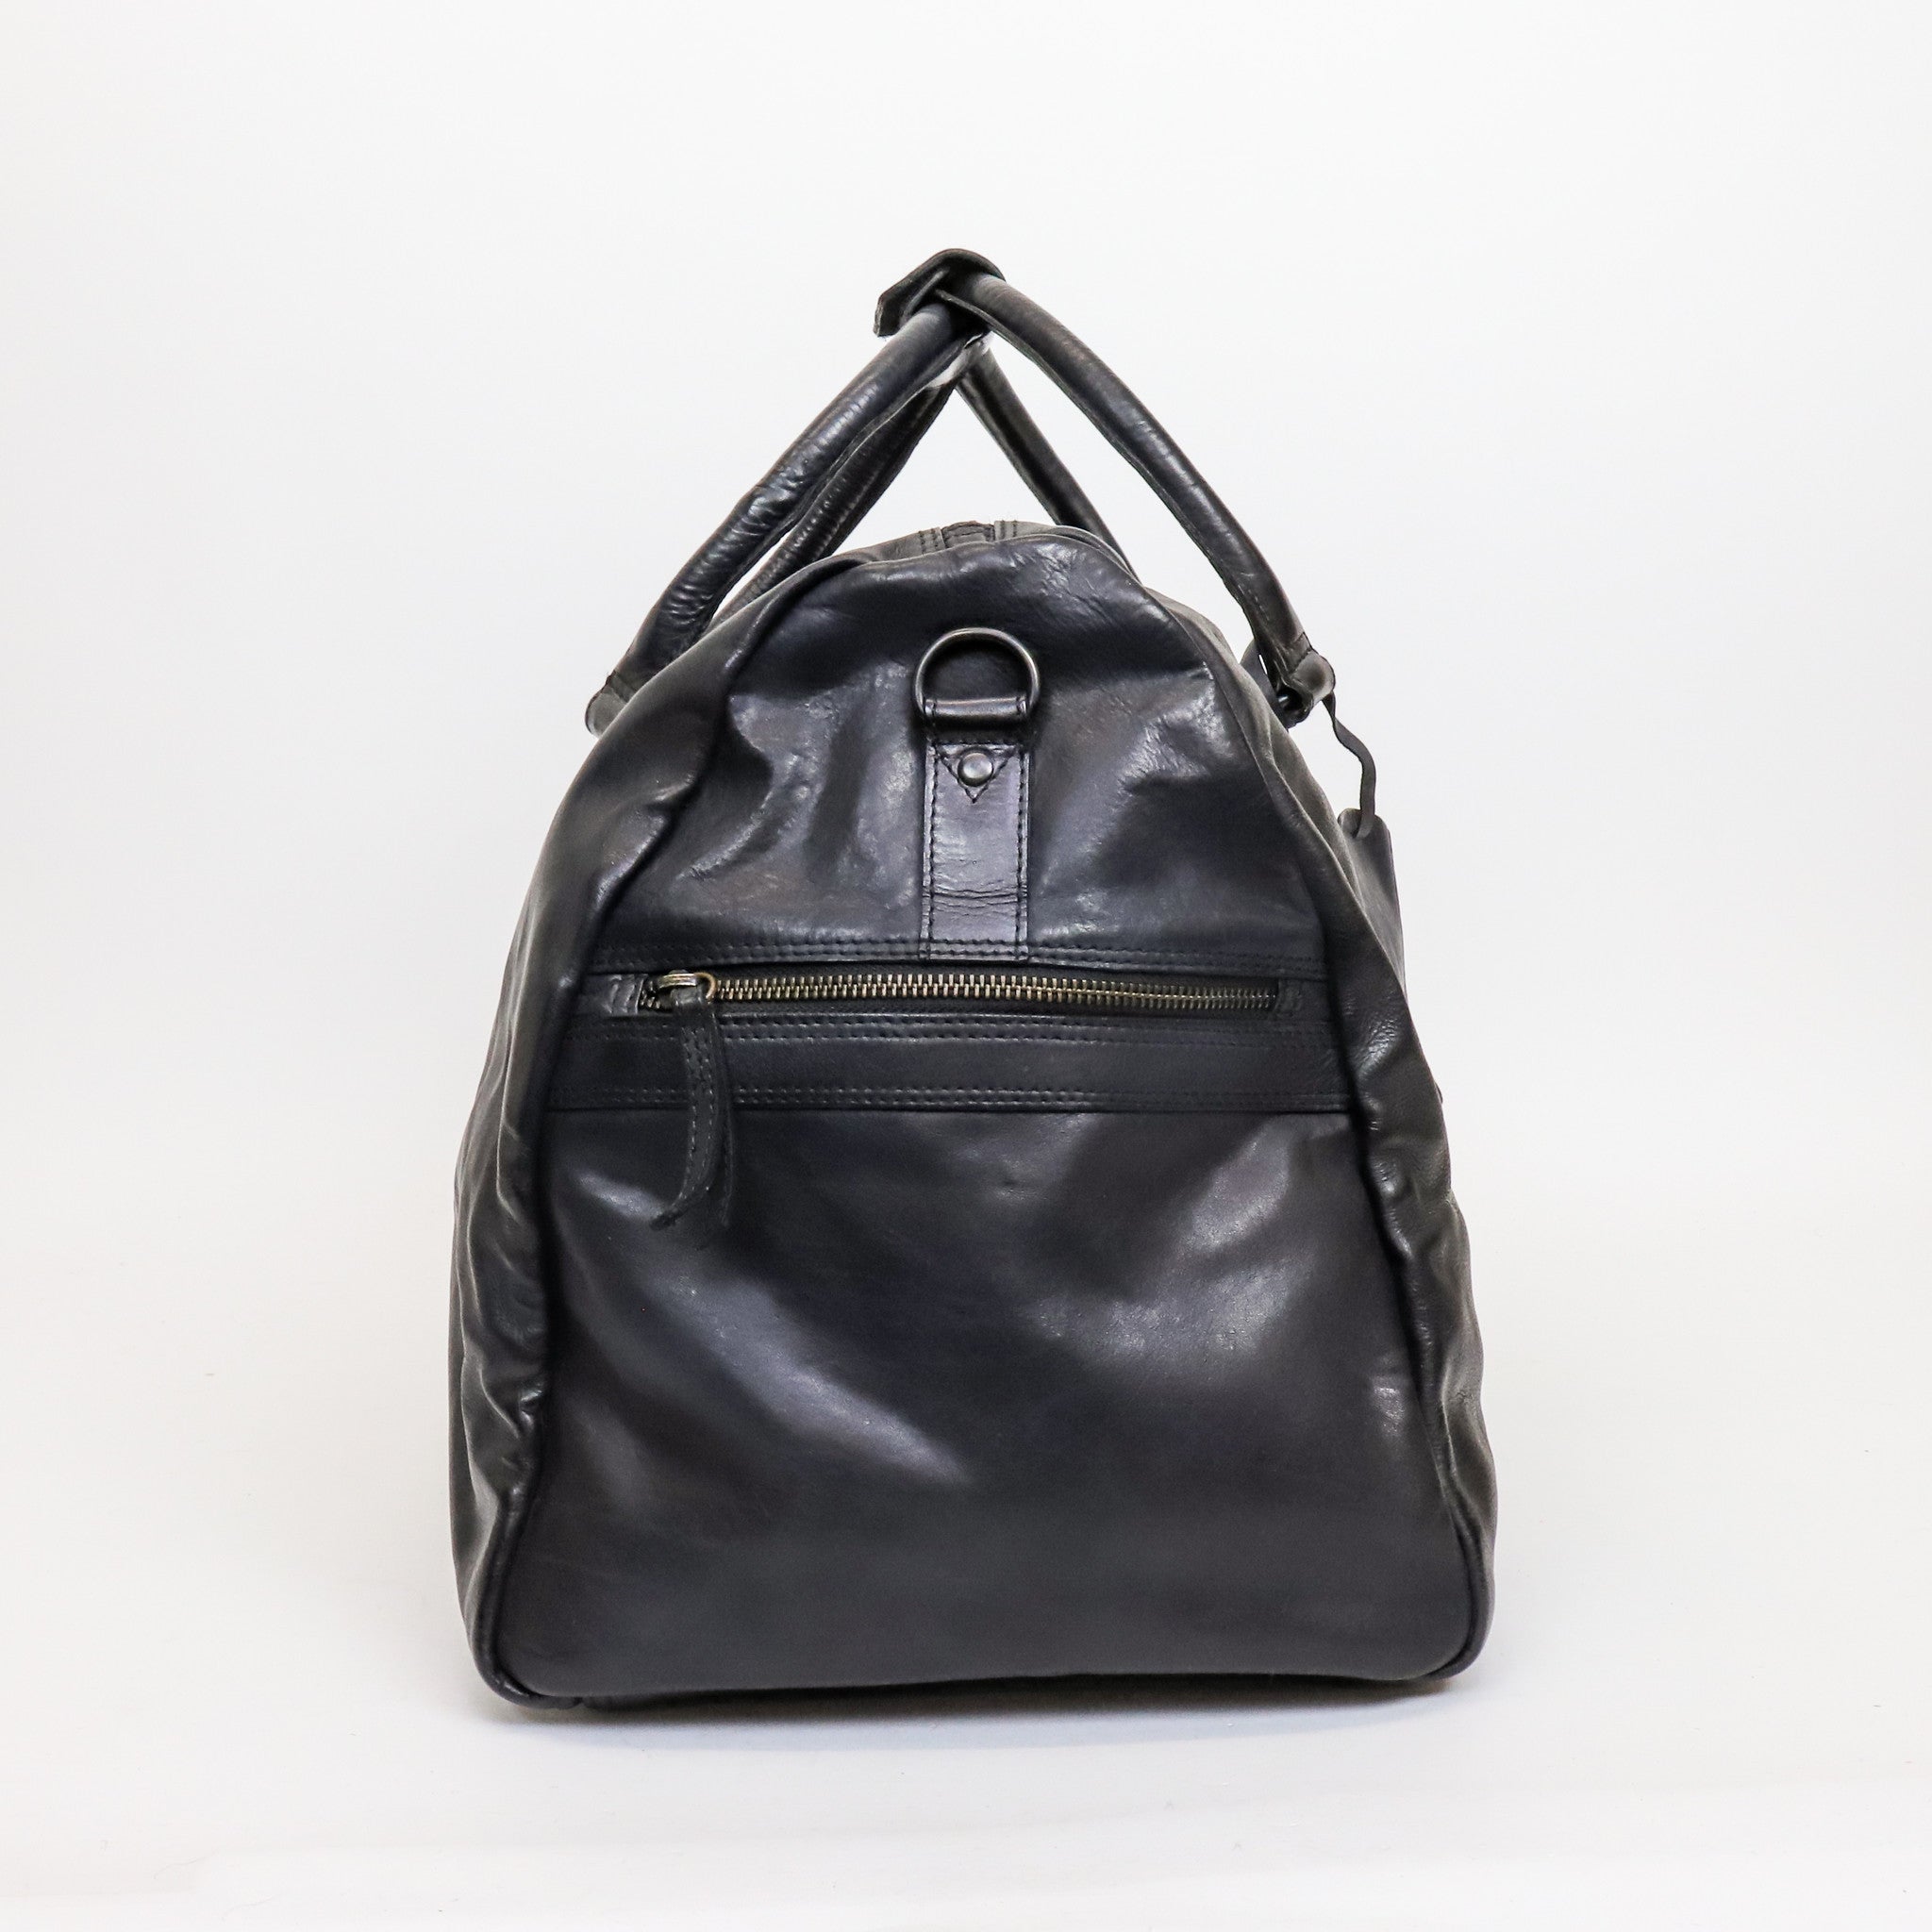 Weekend bag 'Ruben' black - CL 35327